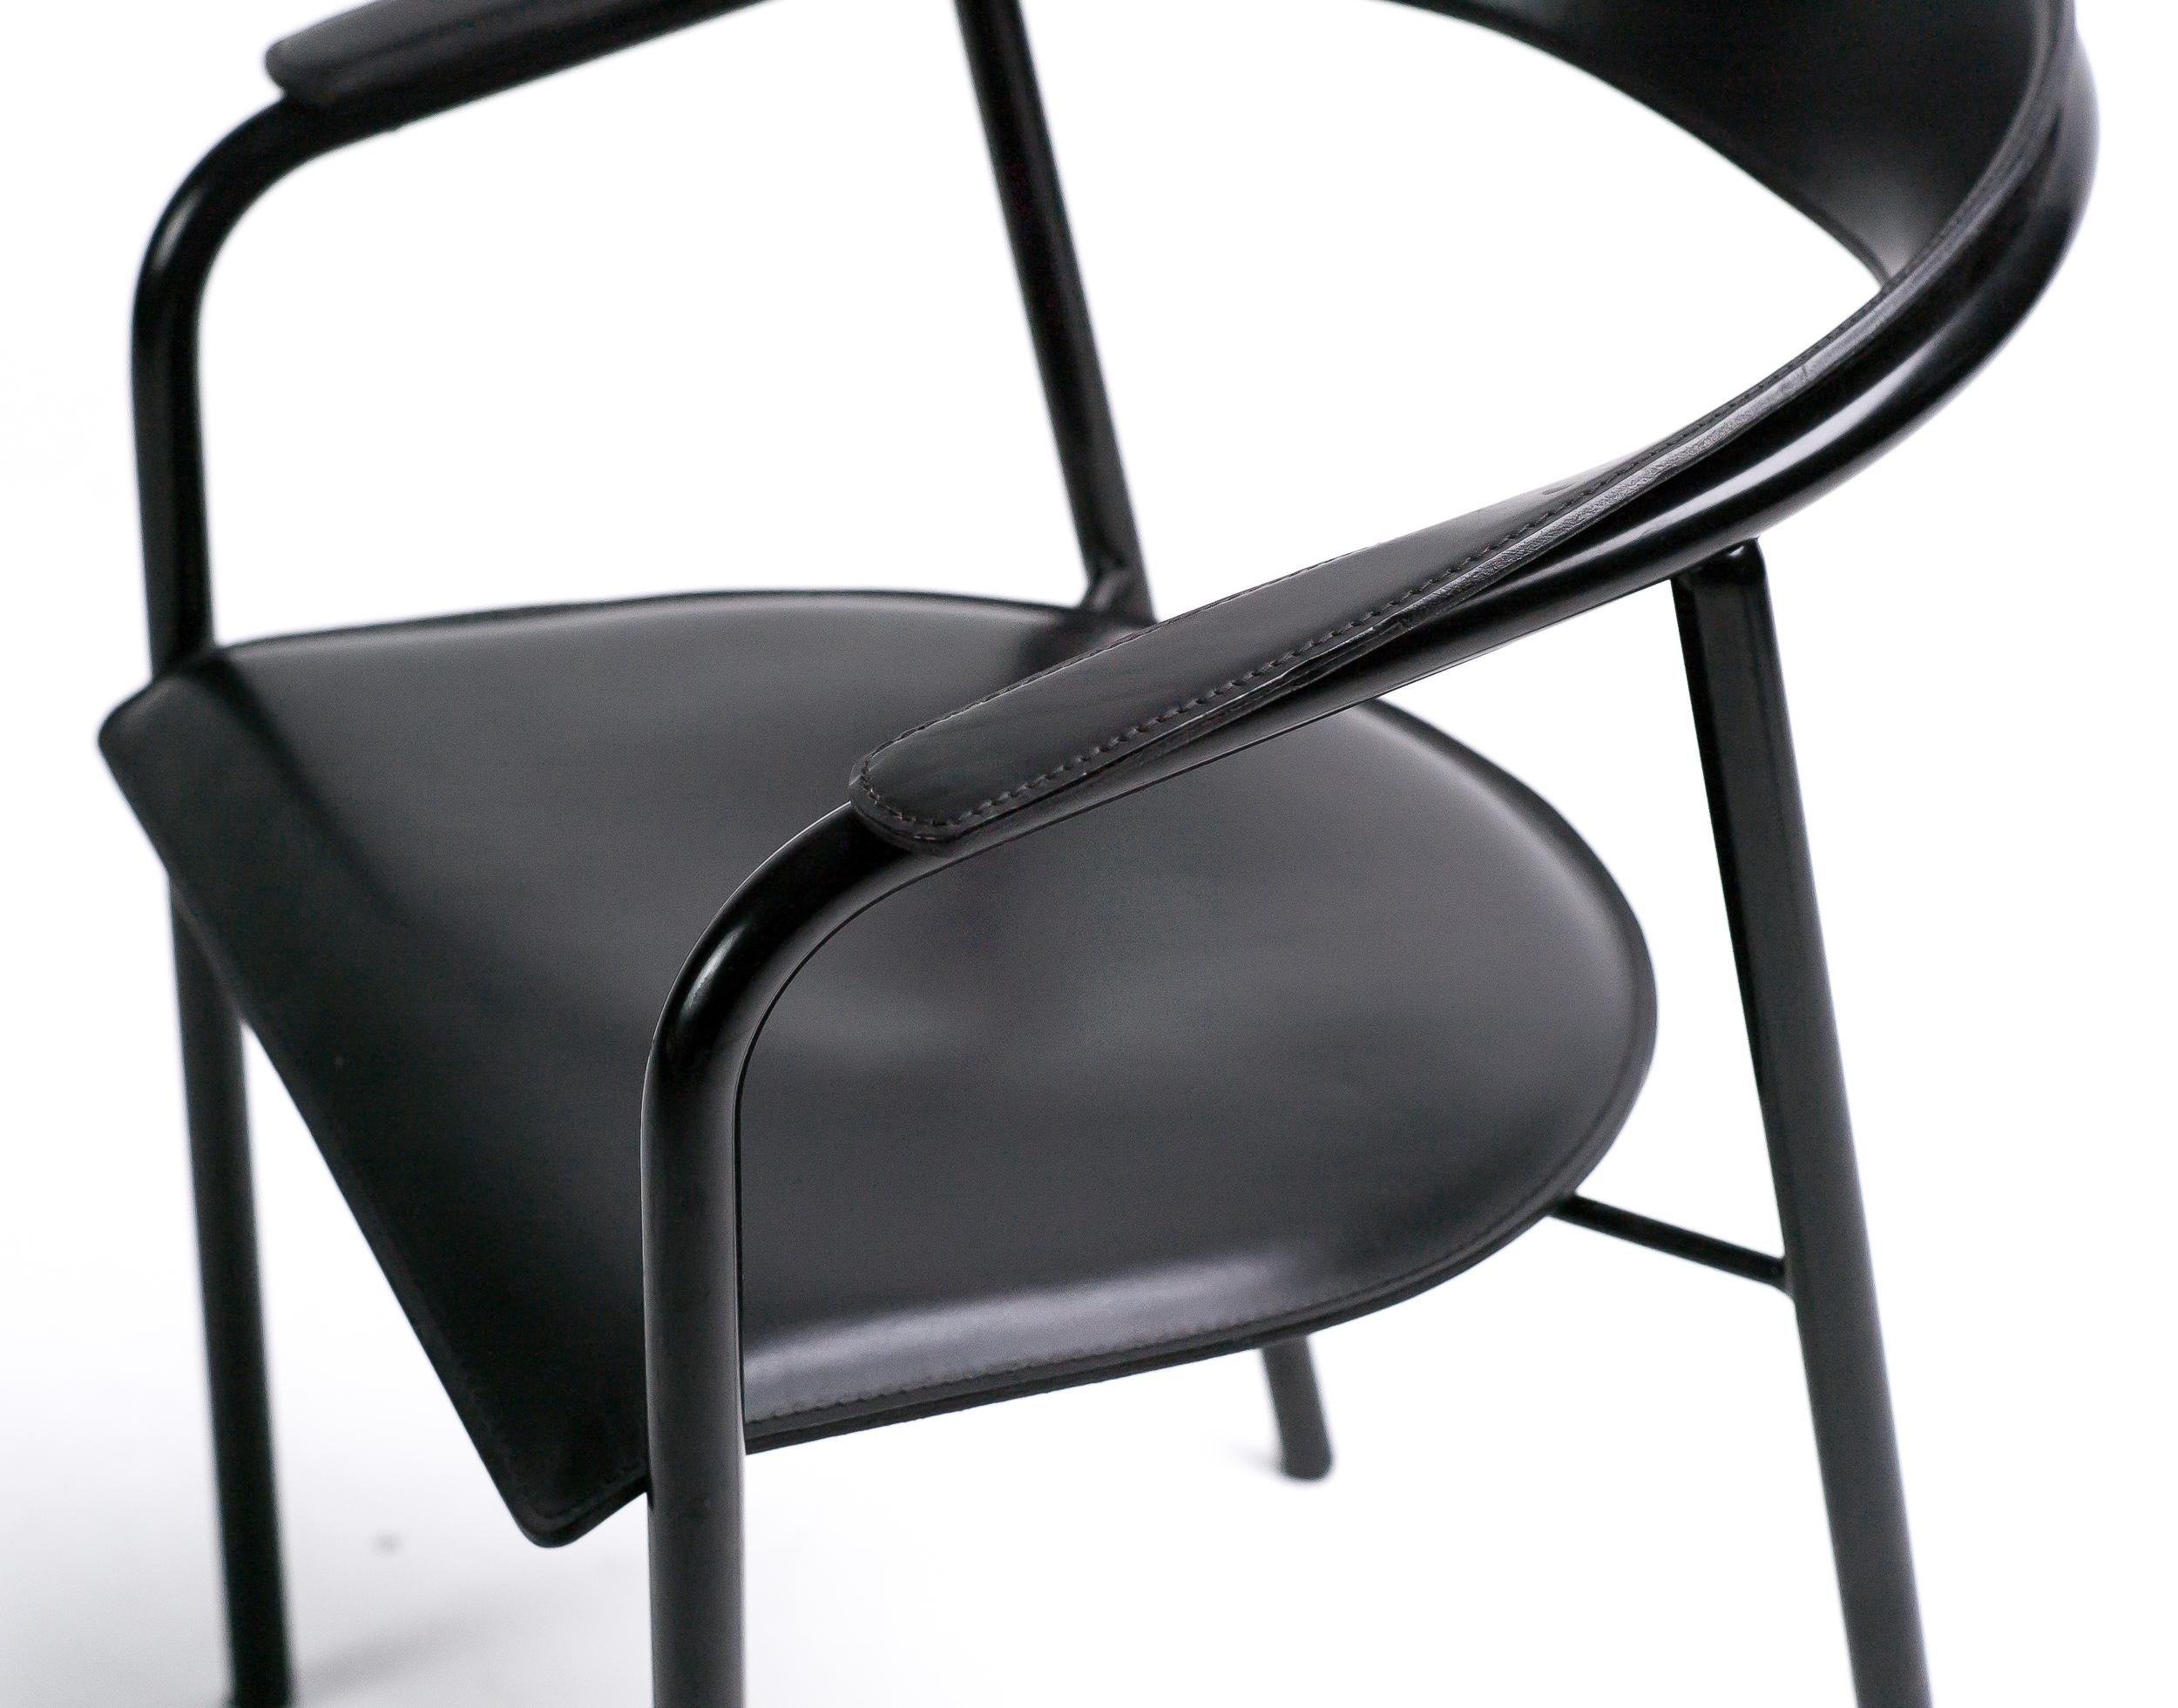 Diese Sessel mit schräger Rückenlehne wurden in den 1980er Jahren von Arrben, Italien, hergestellt.
Die Rohrrahmen sind schwarz emailliert, der Sitz aus schwarzem Sattelleder und die geschwungene Rückenlehne haben eine Ziernaht. Die Stühle sind